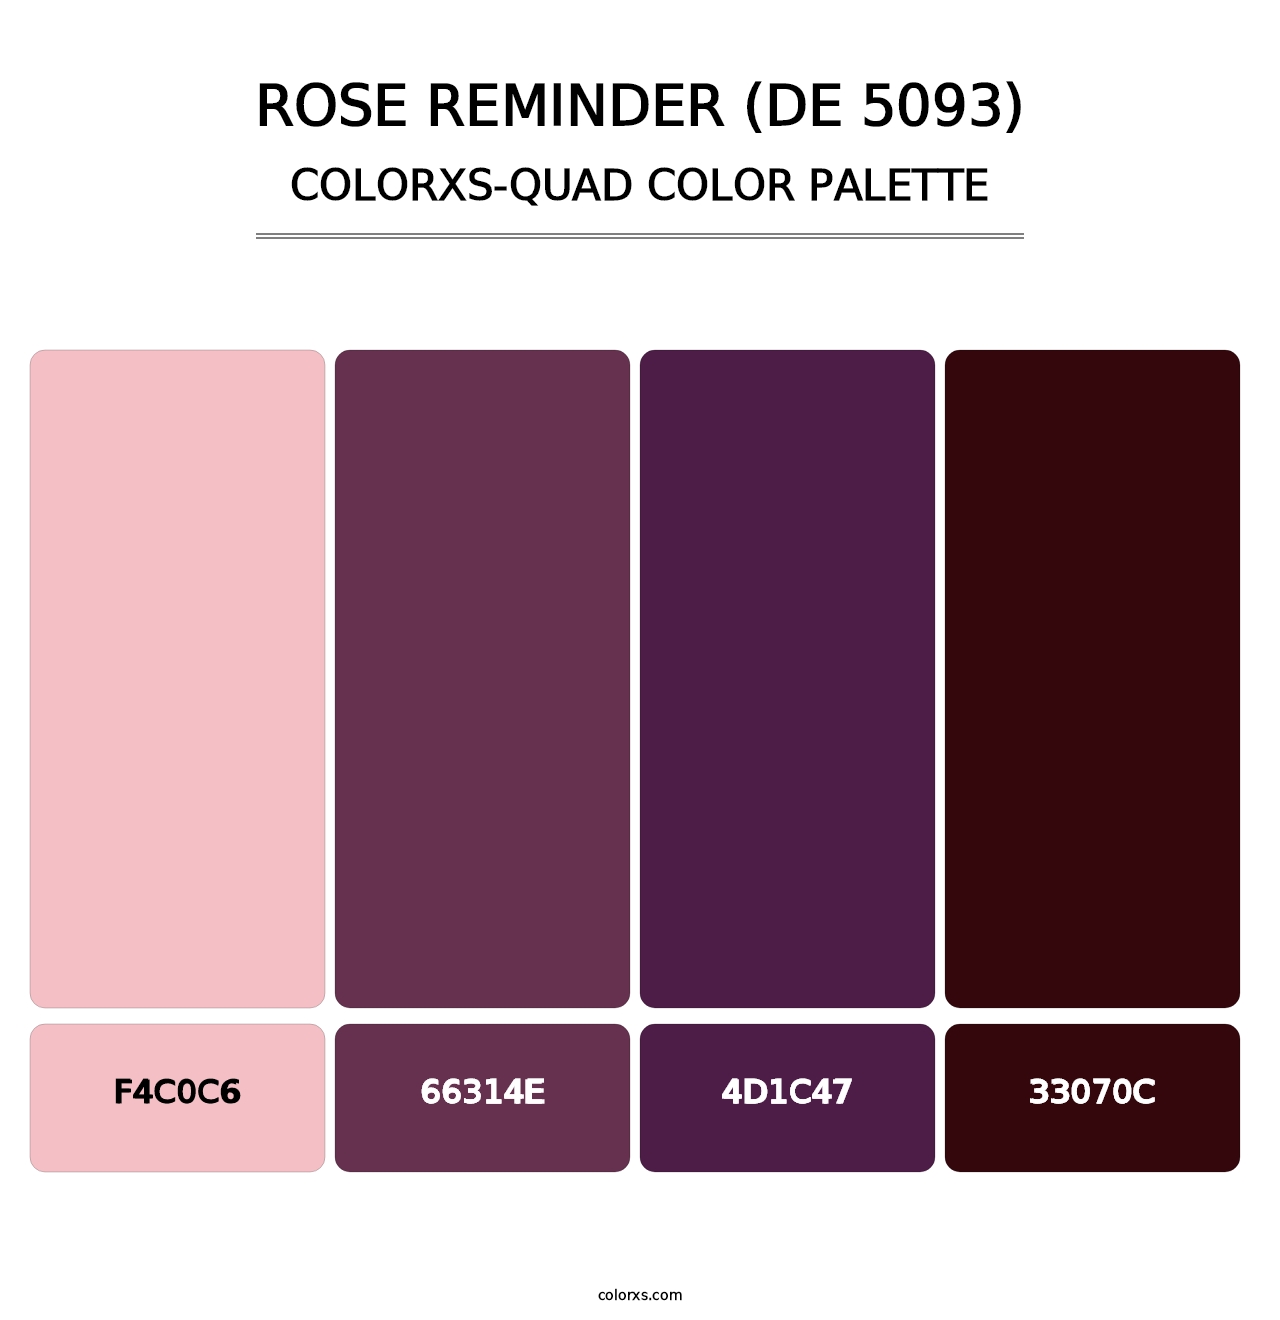 Rose Reminder (DE 5093) - Colorxs Quad Palette